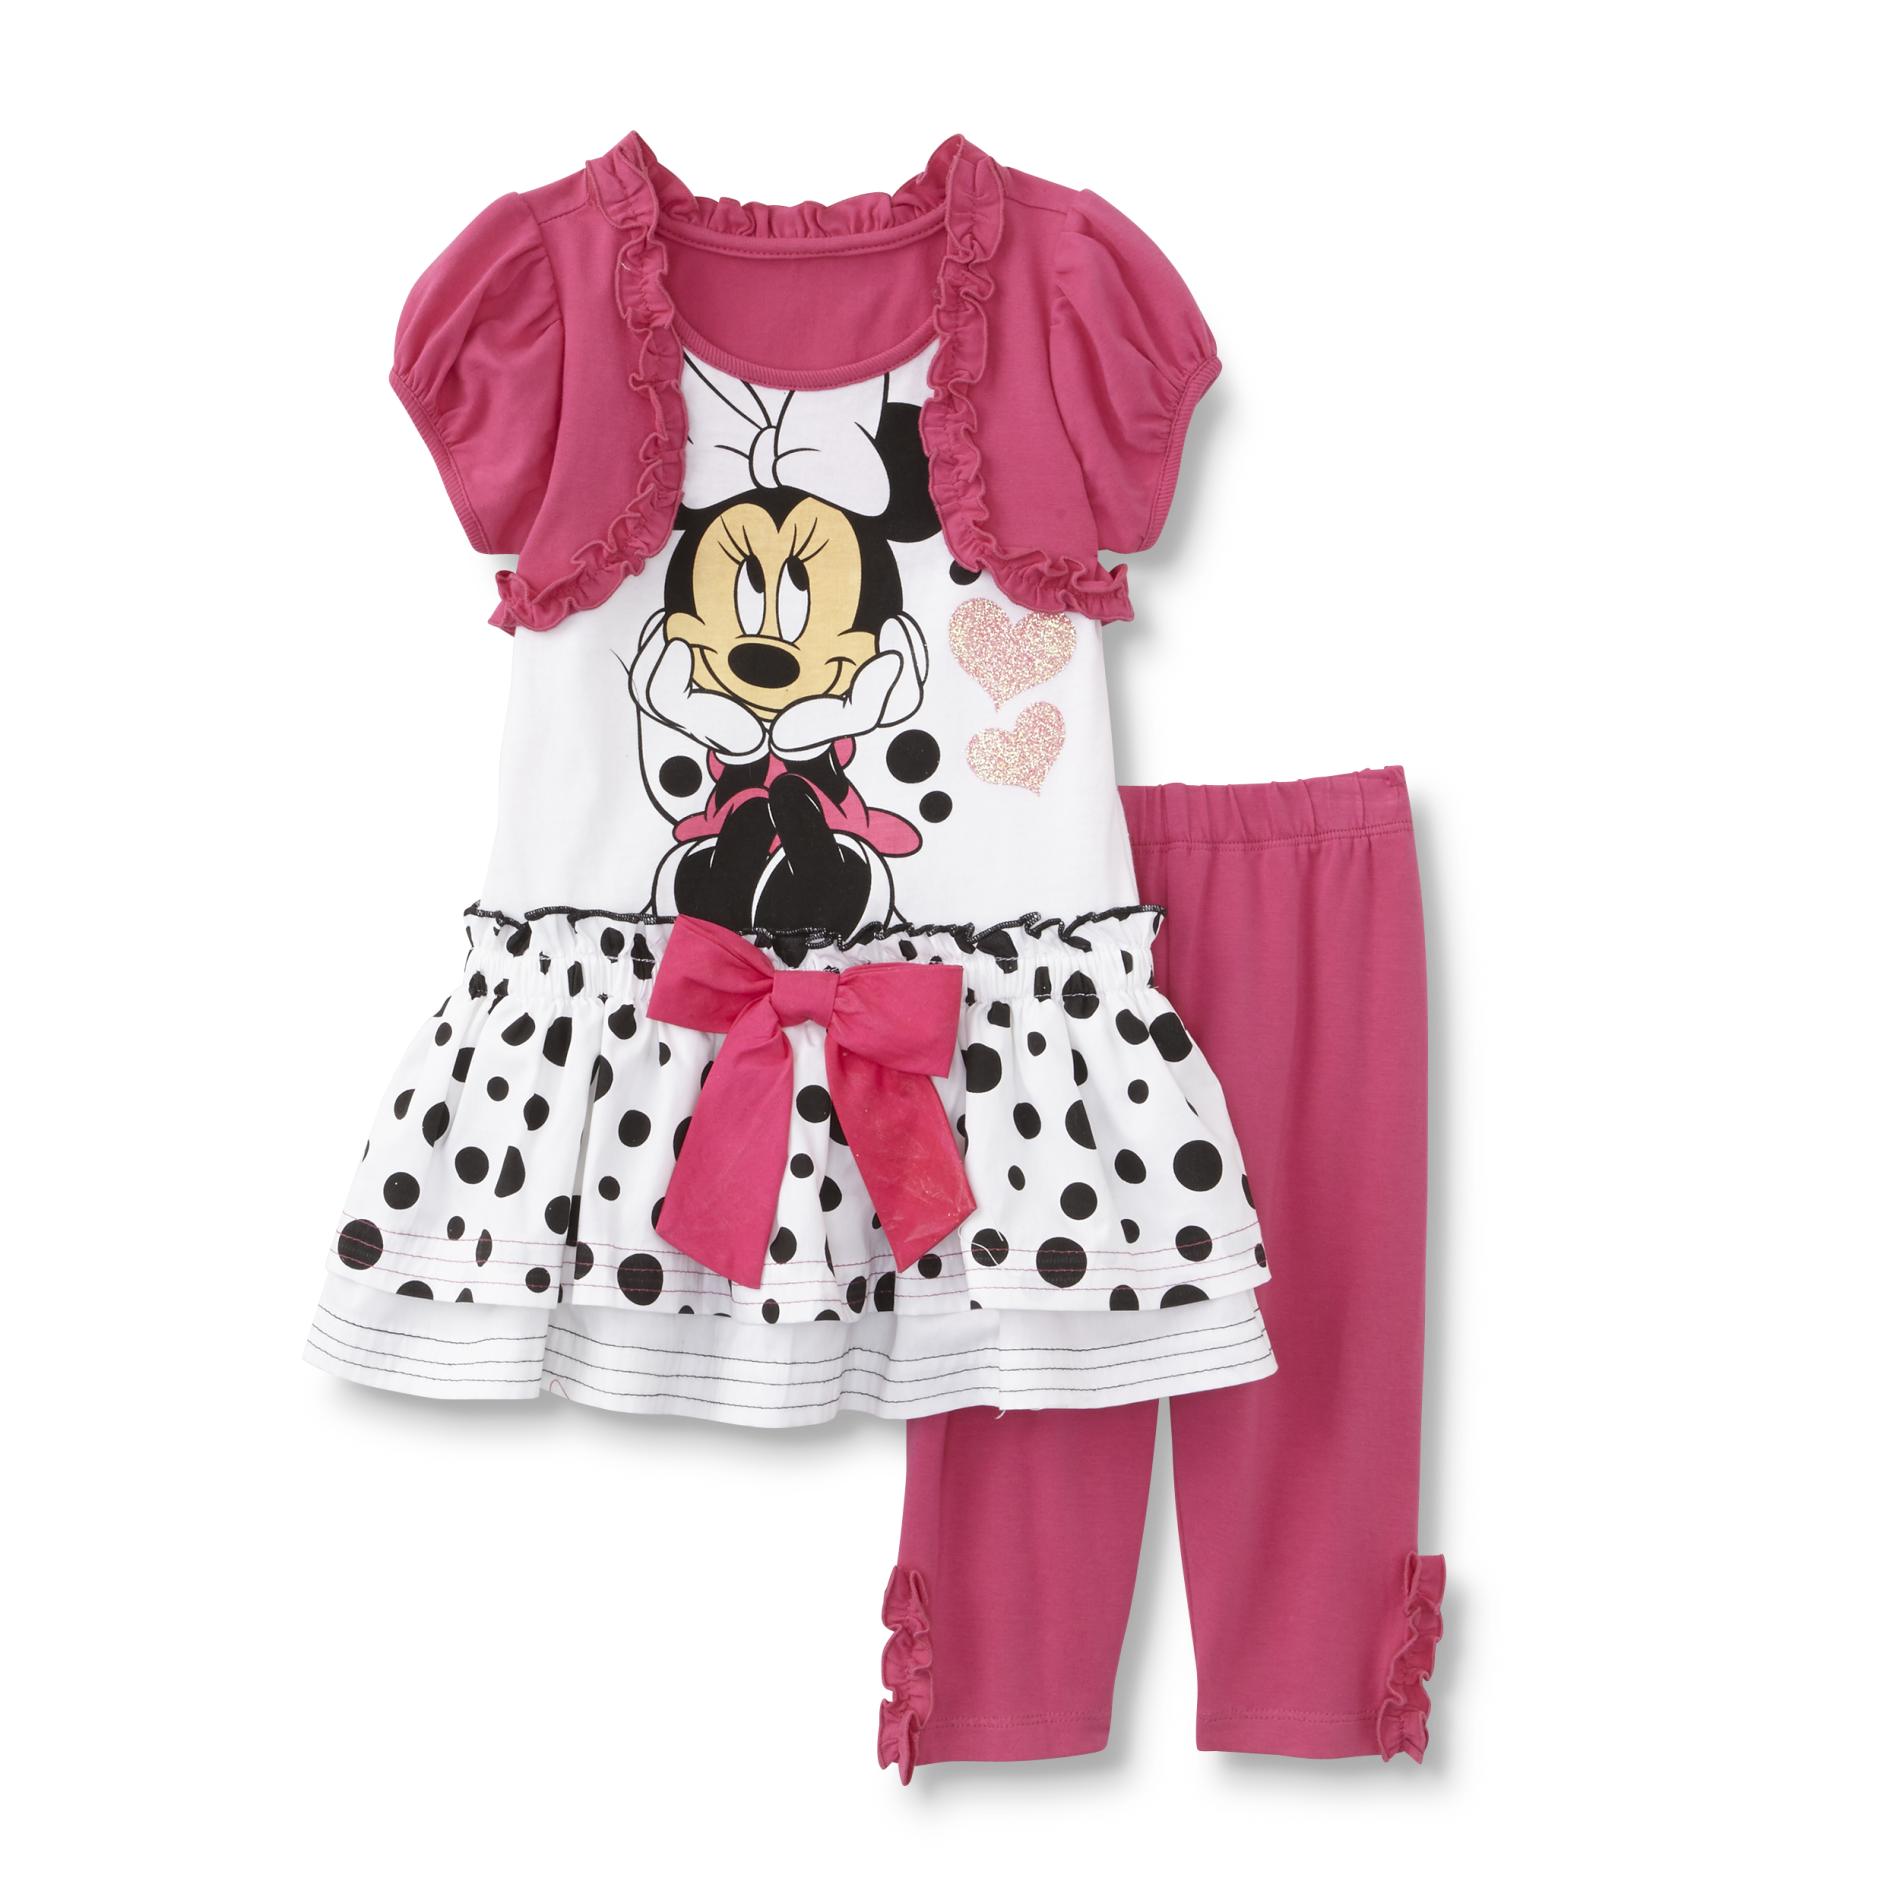 Disney Minnie Mouse Infant & Toddler Girl's Dress & Leggings